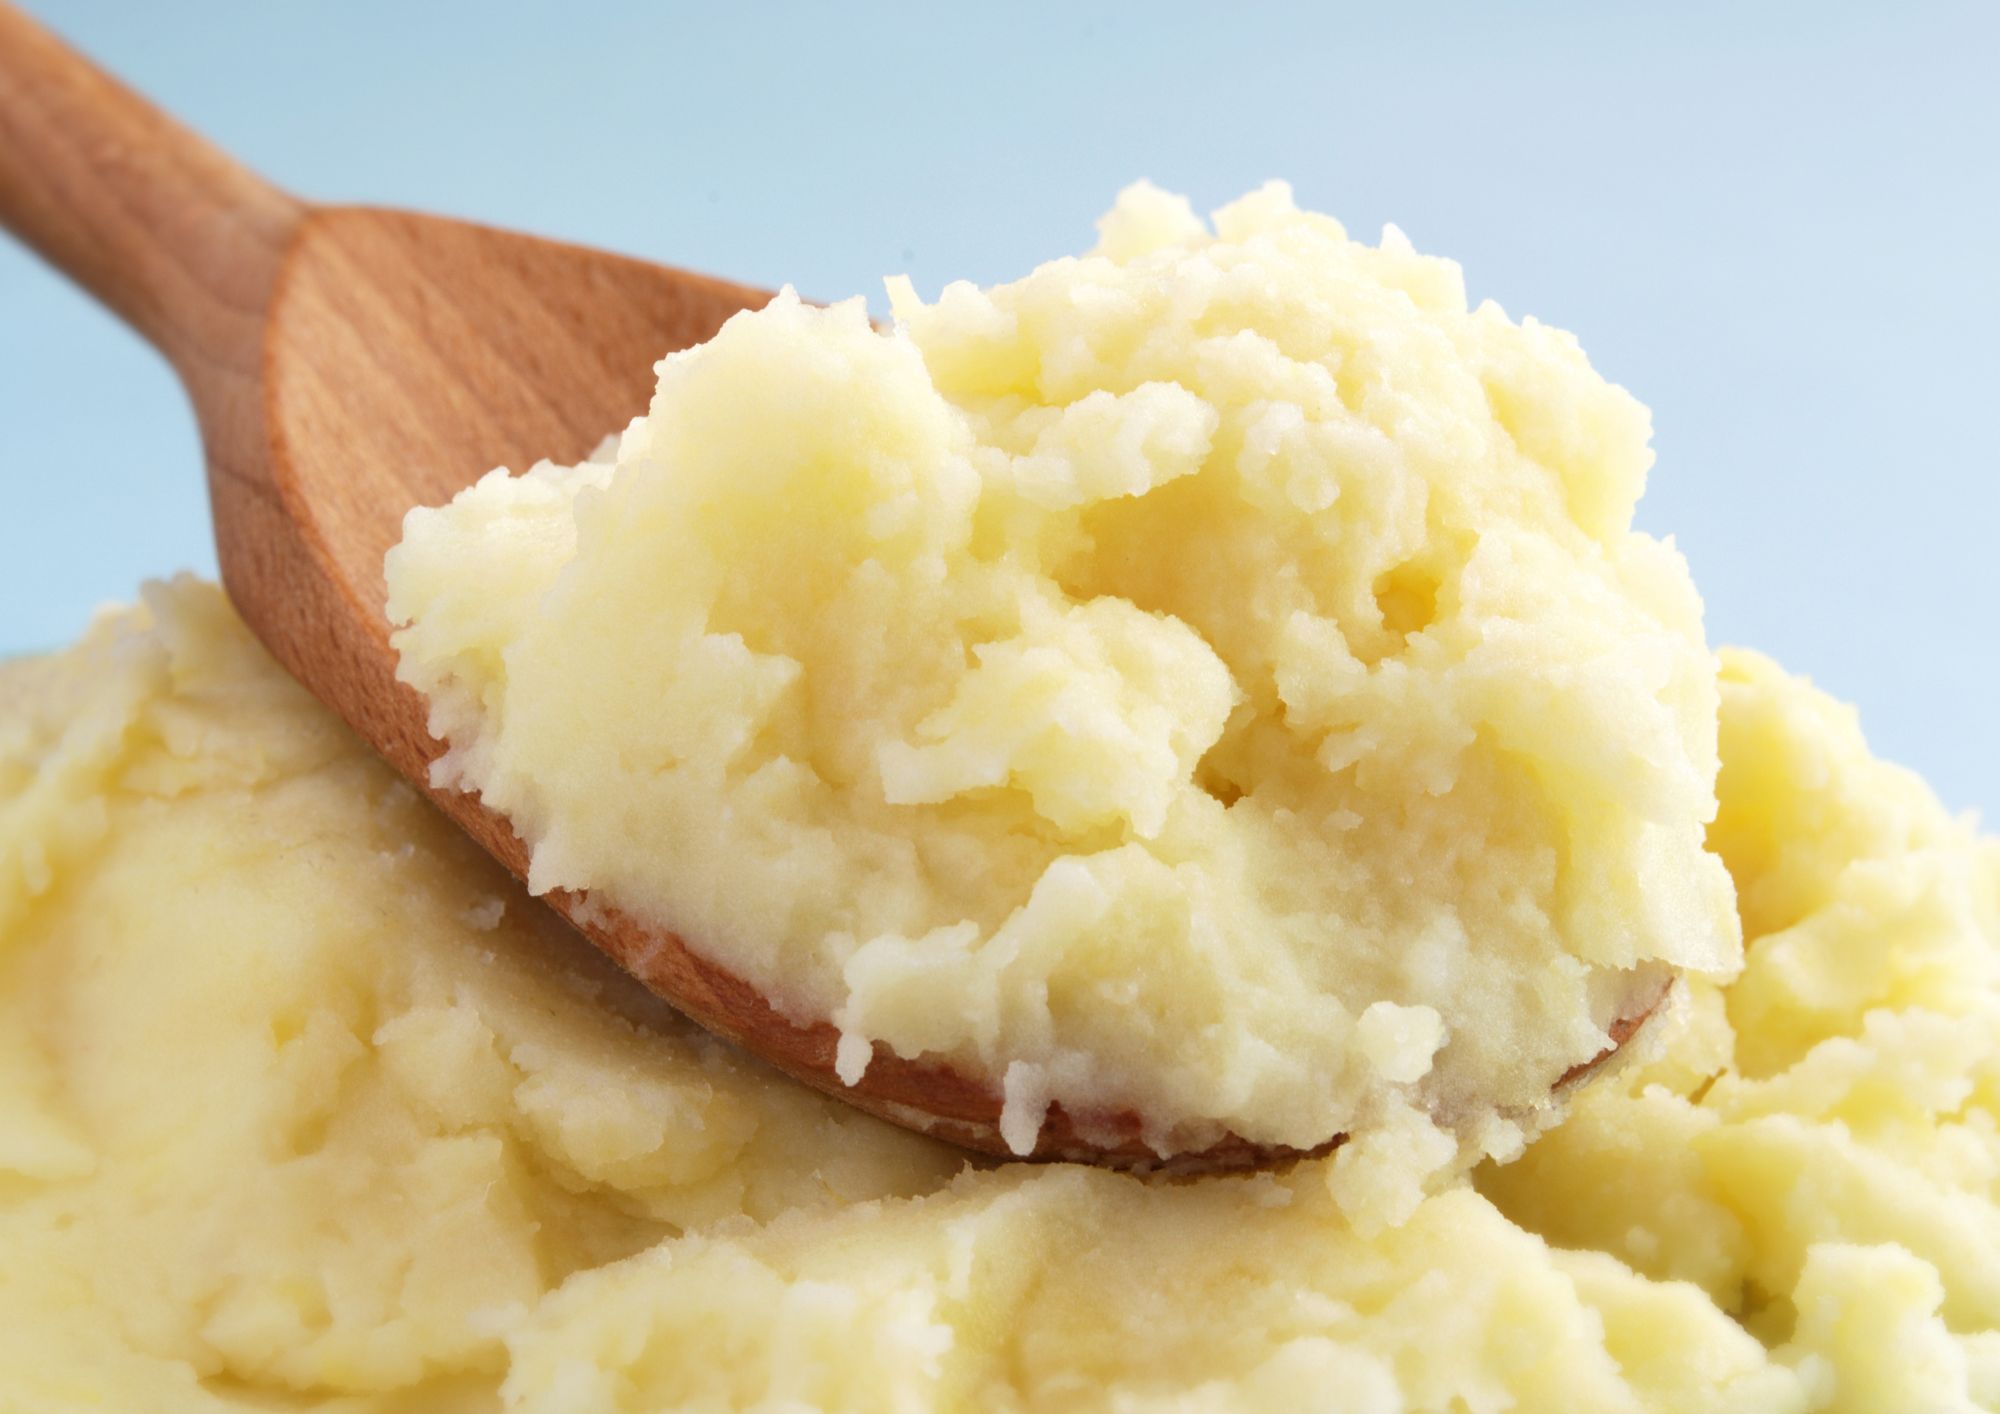 #zerowaste: 4 ideas for reusing mashed potato